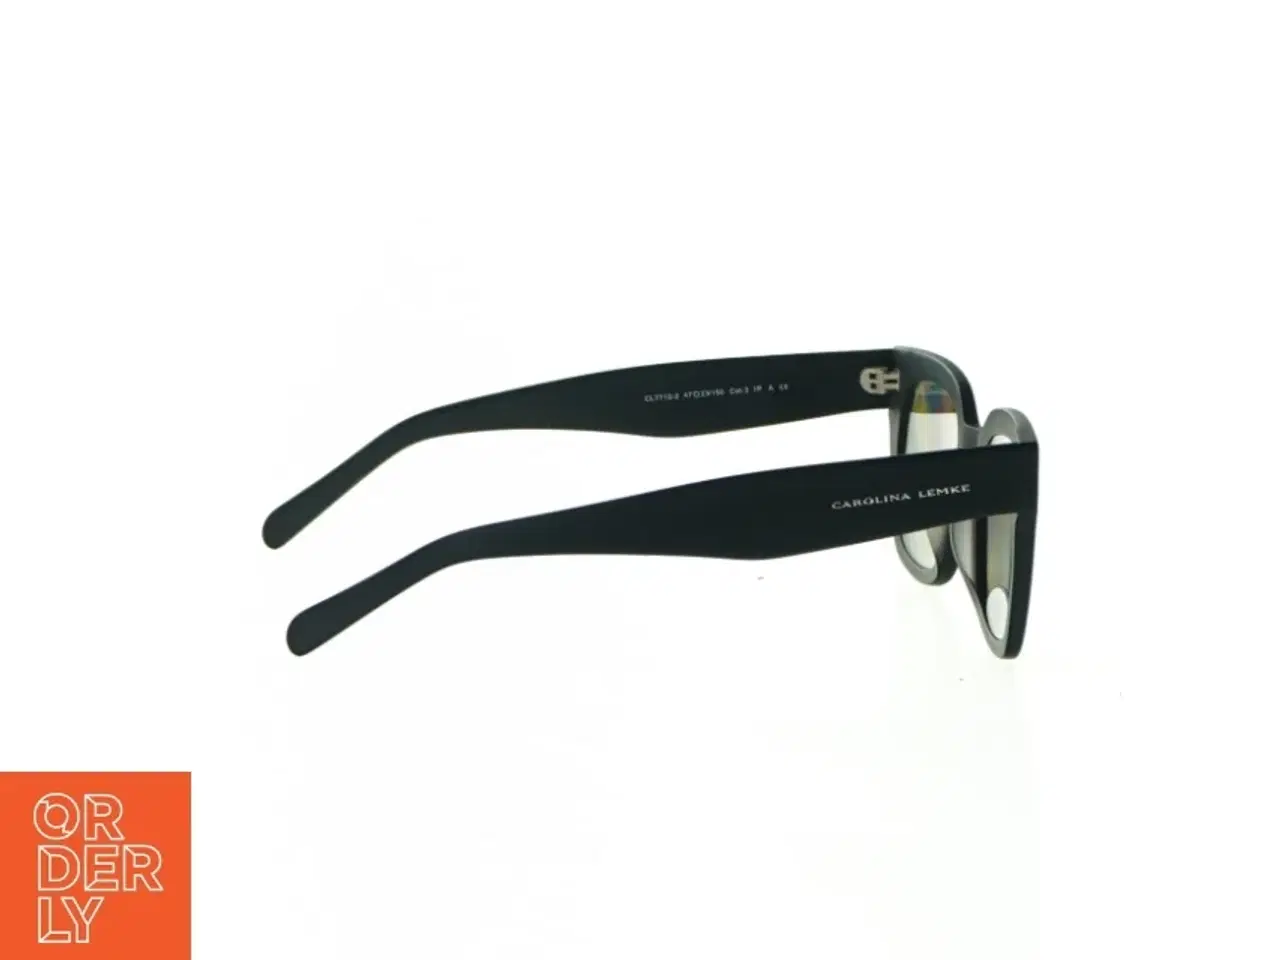 Billede 2 - Solbriller fra Carolina Lemke (str. 14 x 5 cm)